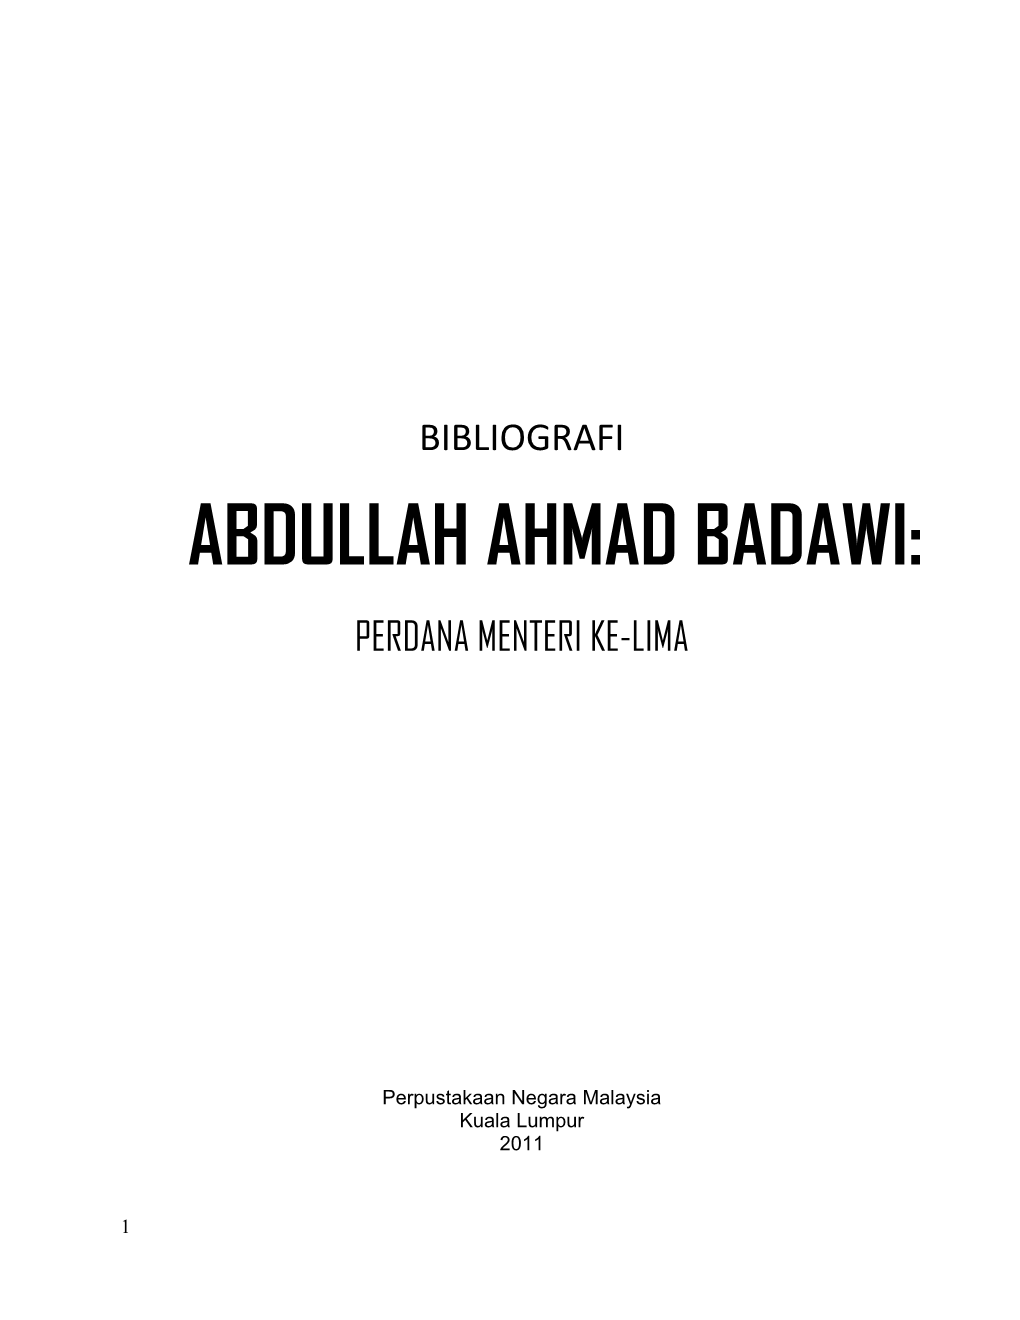 Abdullah Ahmad Badawi: Perdana Menteri Ke-Lima